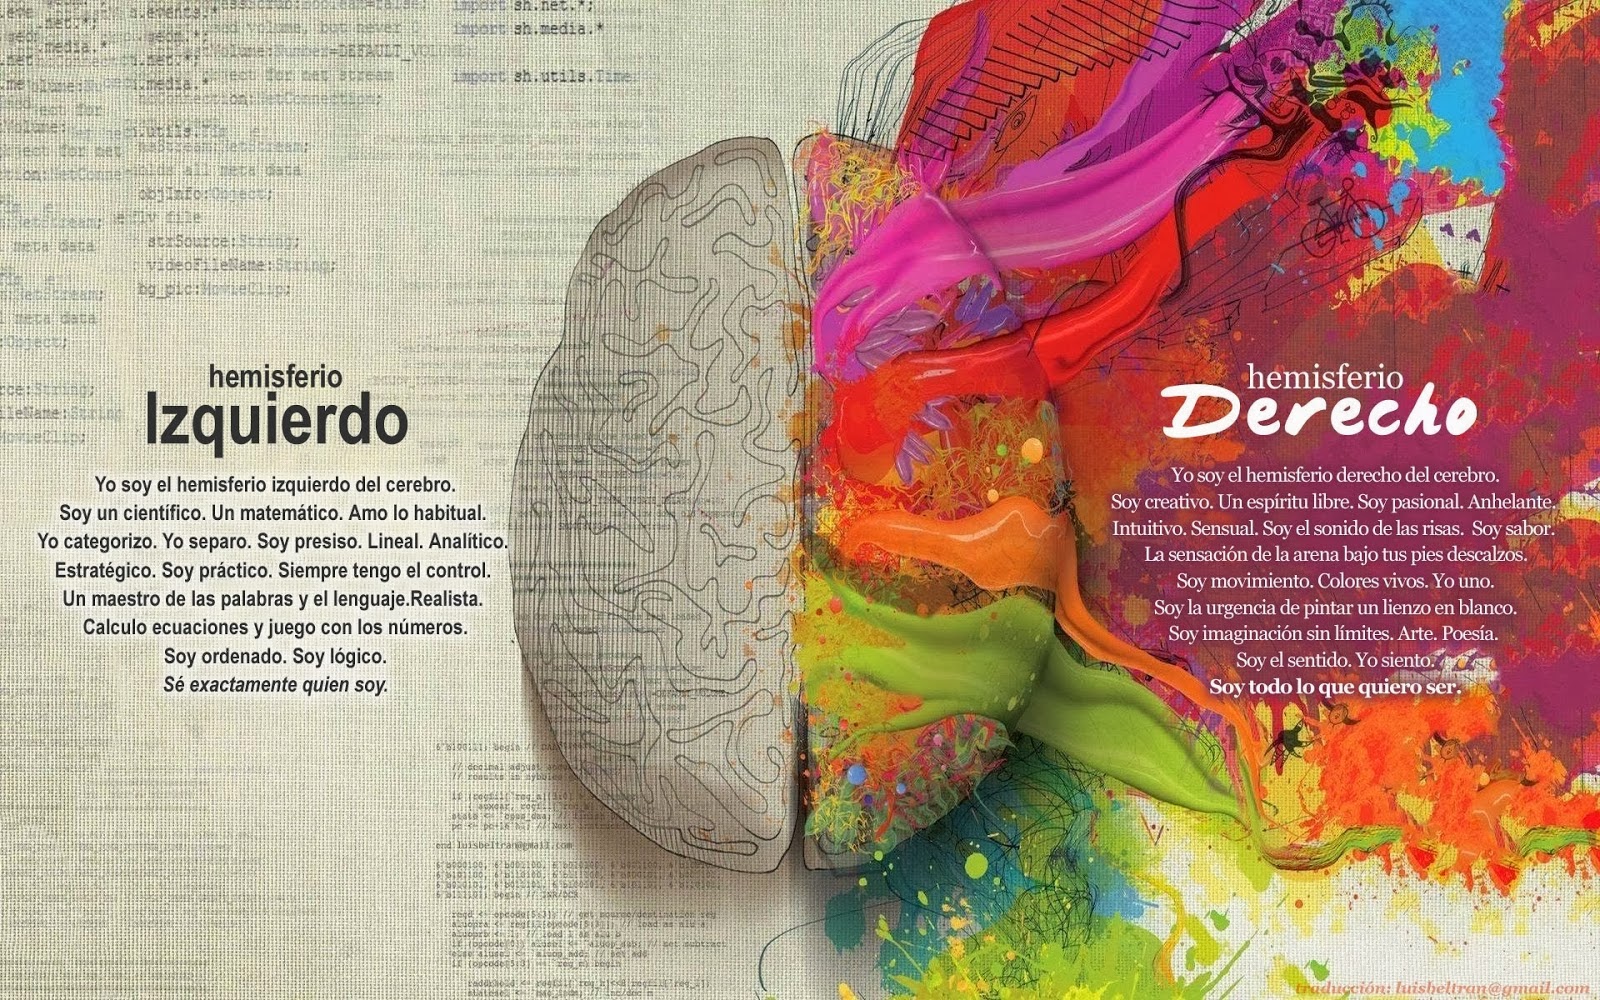 Lámina del cerebro representando ambos hemisferios y sus caracteristicas. Hemisferio derecho de múltiples colores.